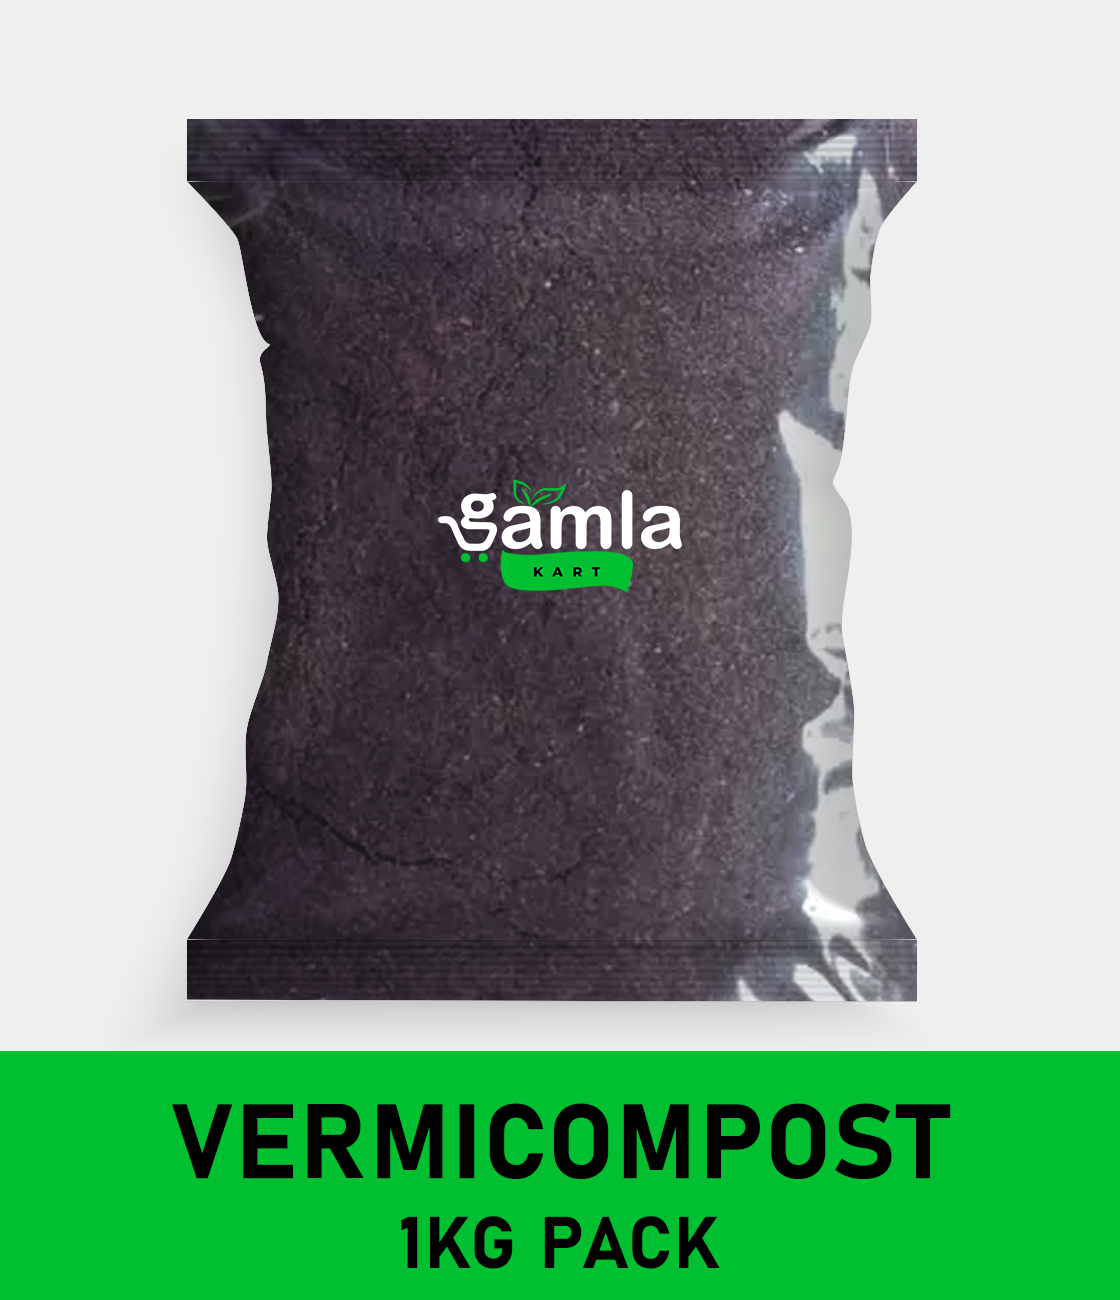 Vermicompost Fertilizer - Worm Magic for Your Plants